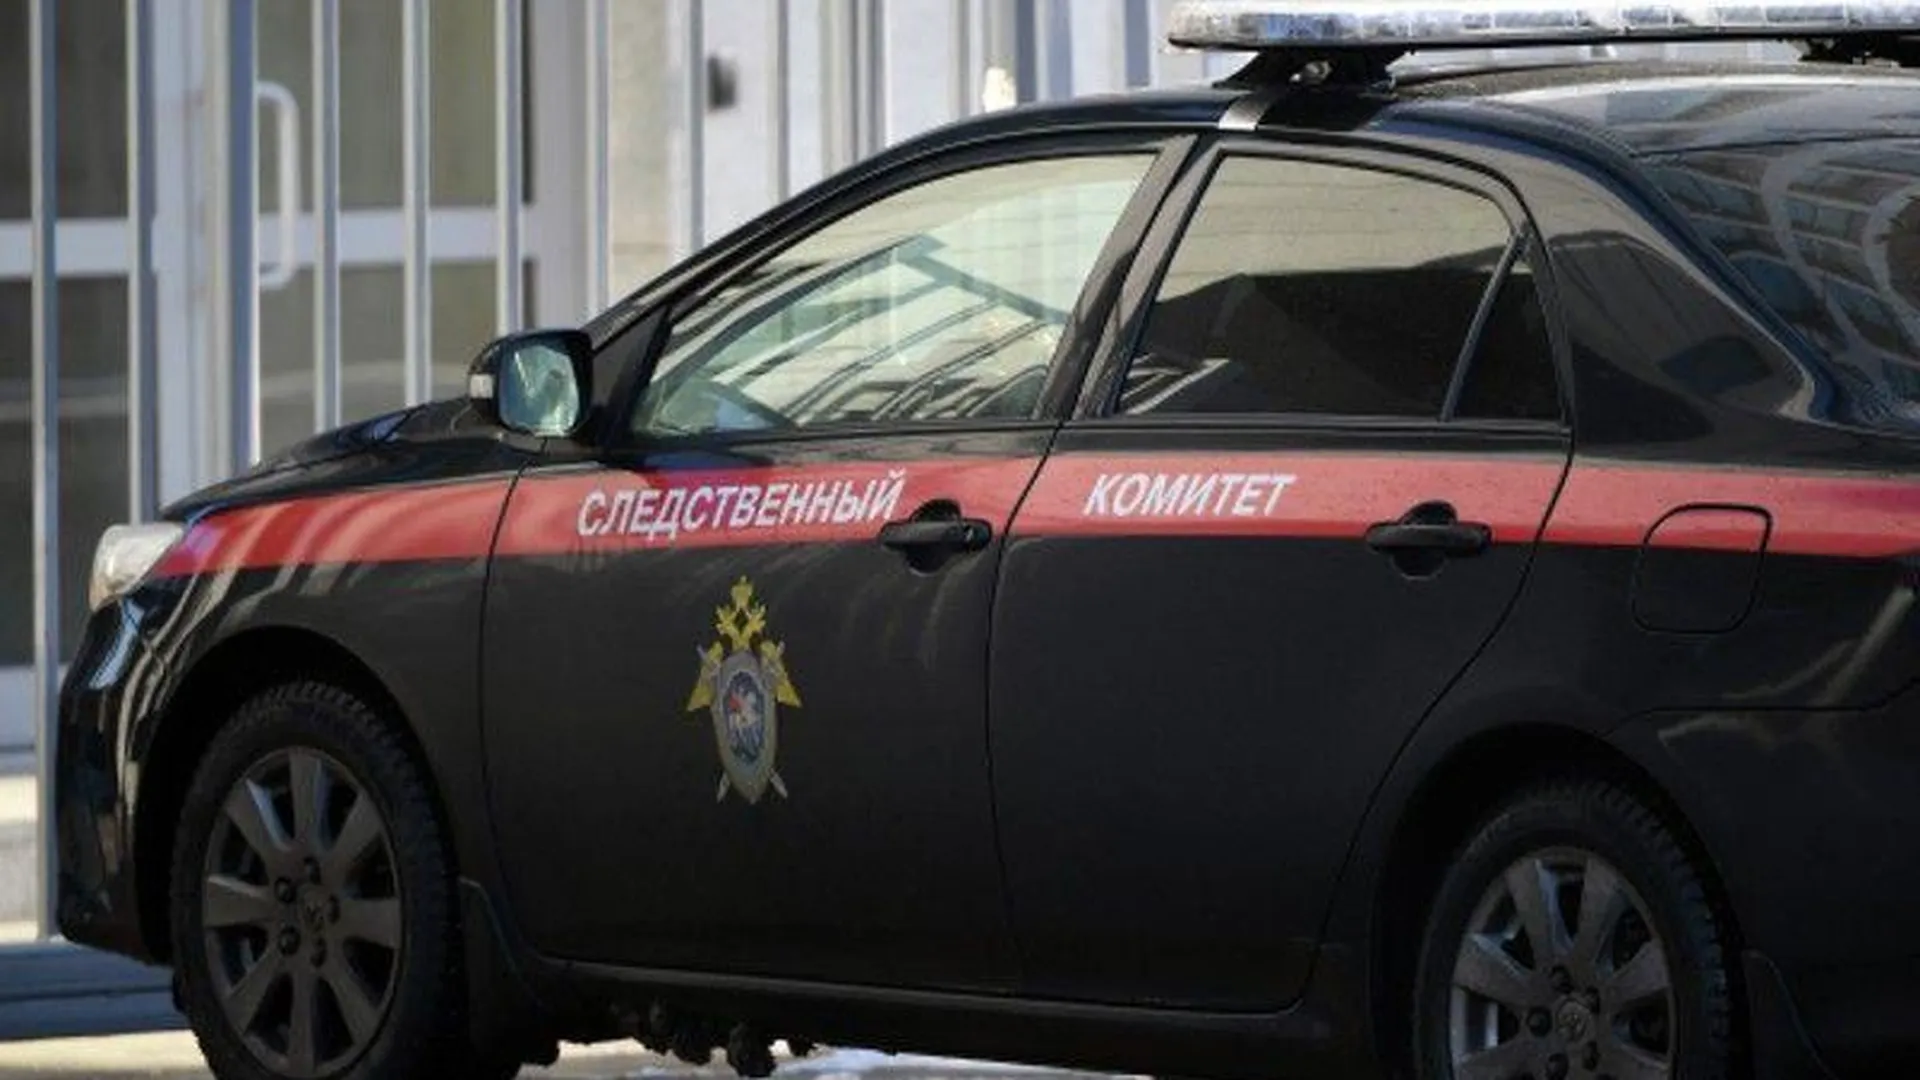 В Орехово-Зуево предъявили обвинение пенсионеру, который зарезал жену